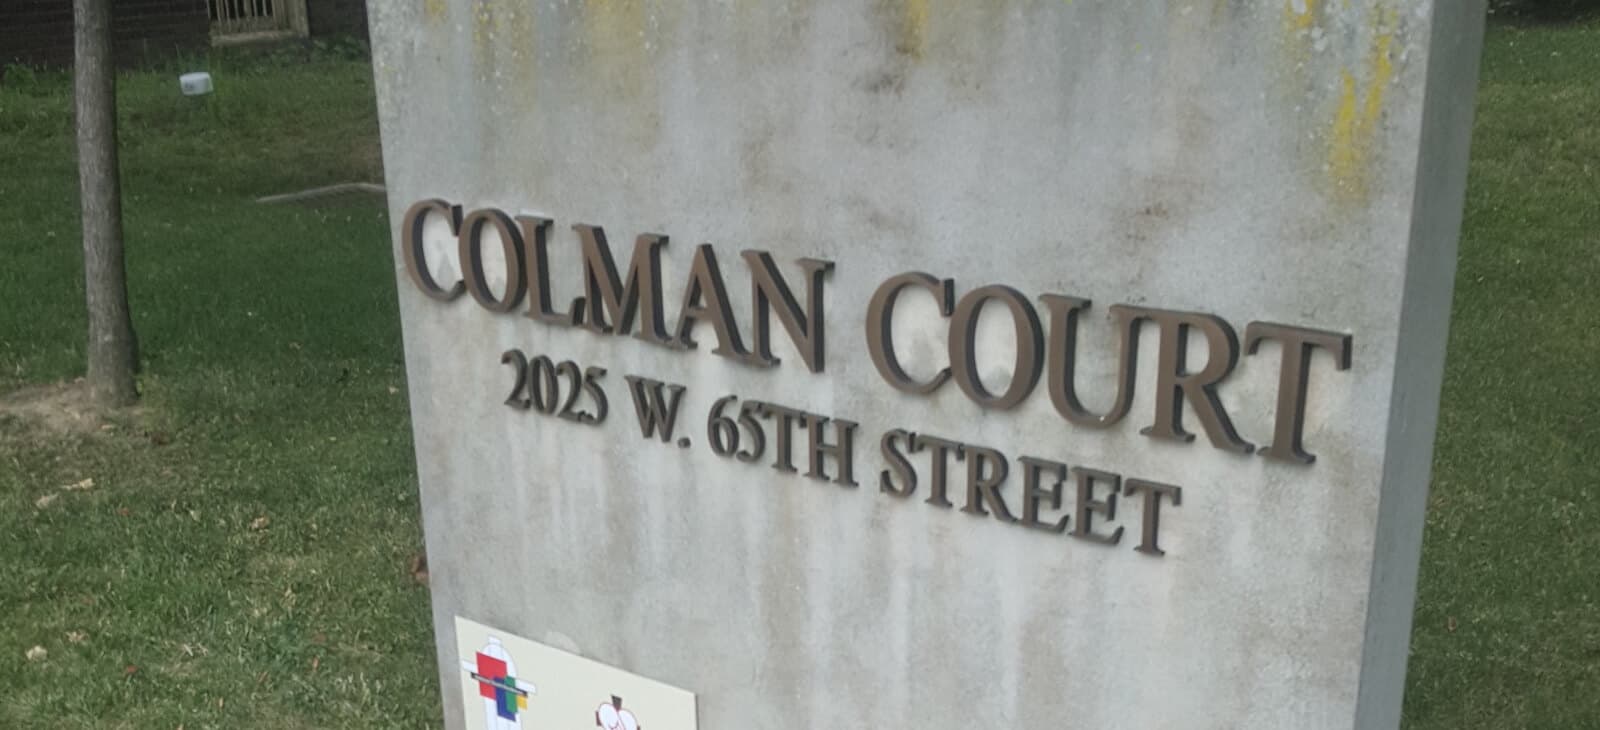 Coleman Court